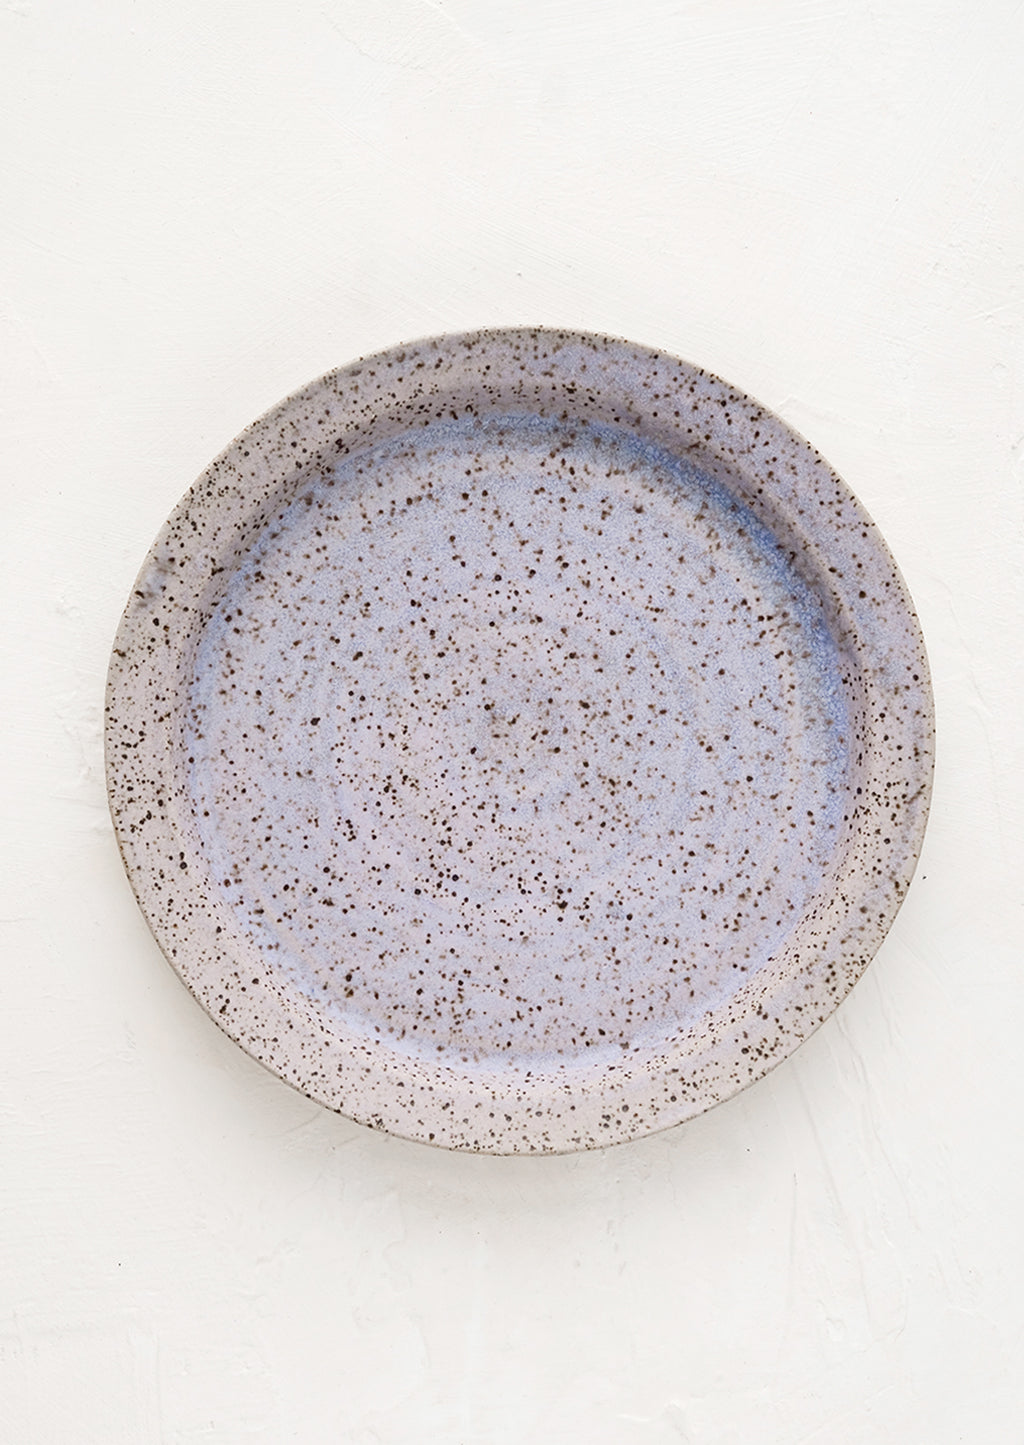 Lavender Speckle (Matte): A ceramic side plate in lavender speckle glaze.